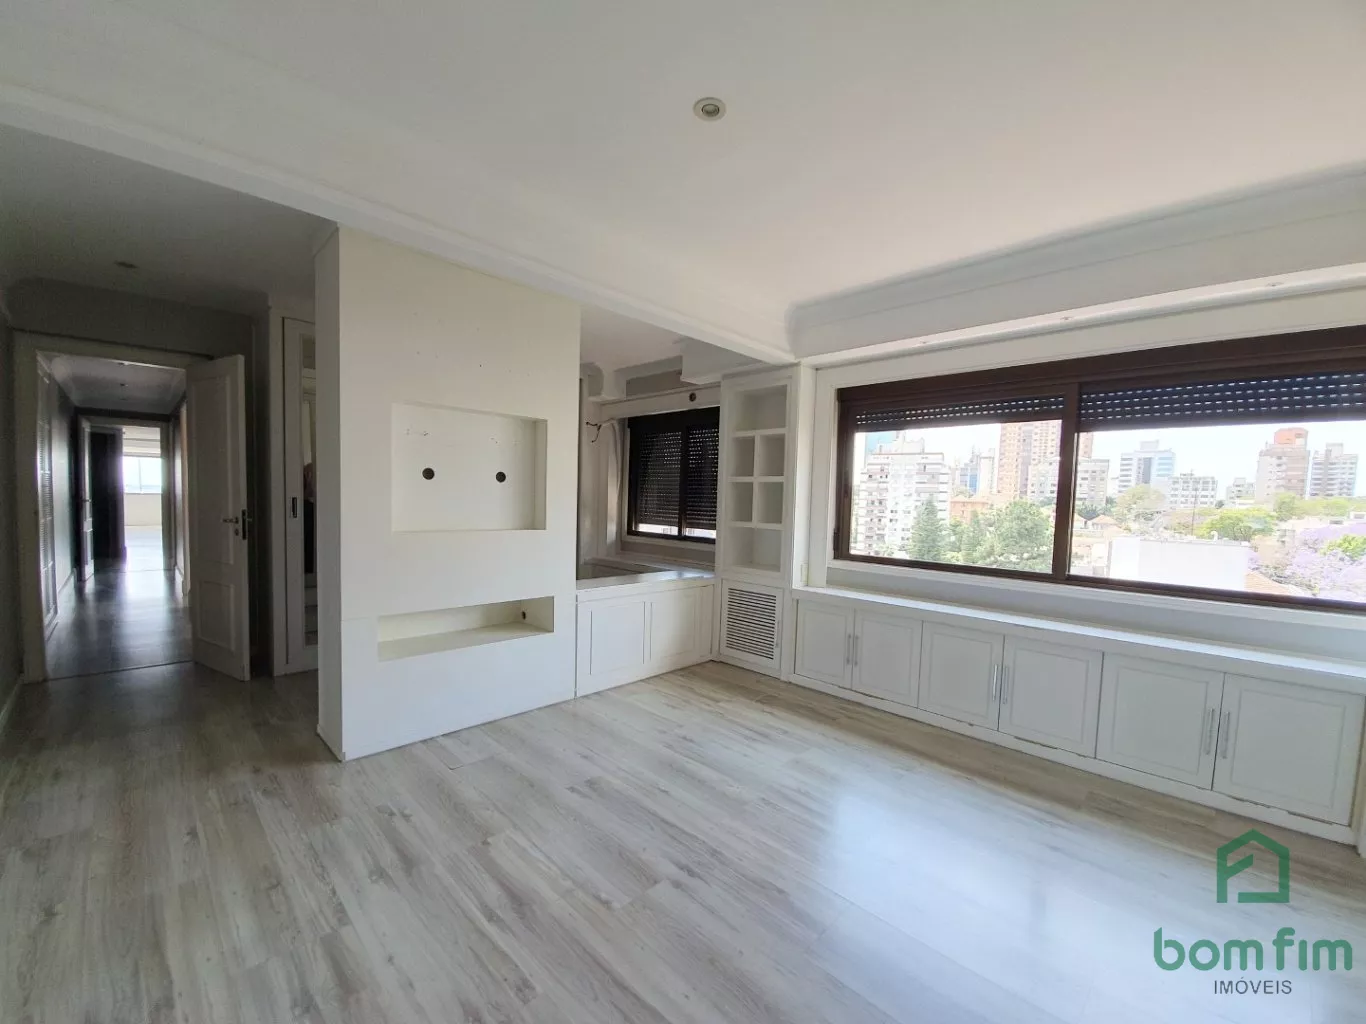 Notícias: Lufe transforma apartamento com pisos Indusparquet